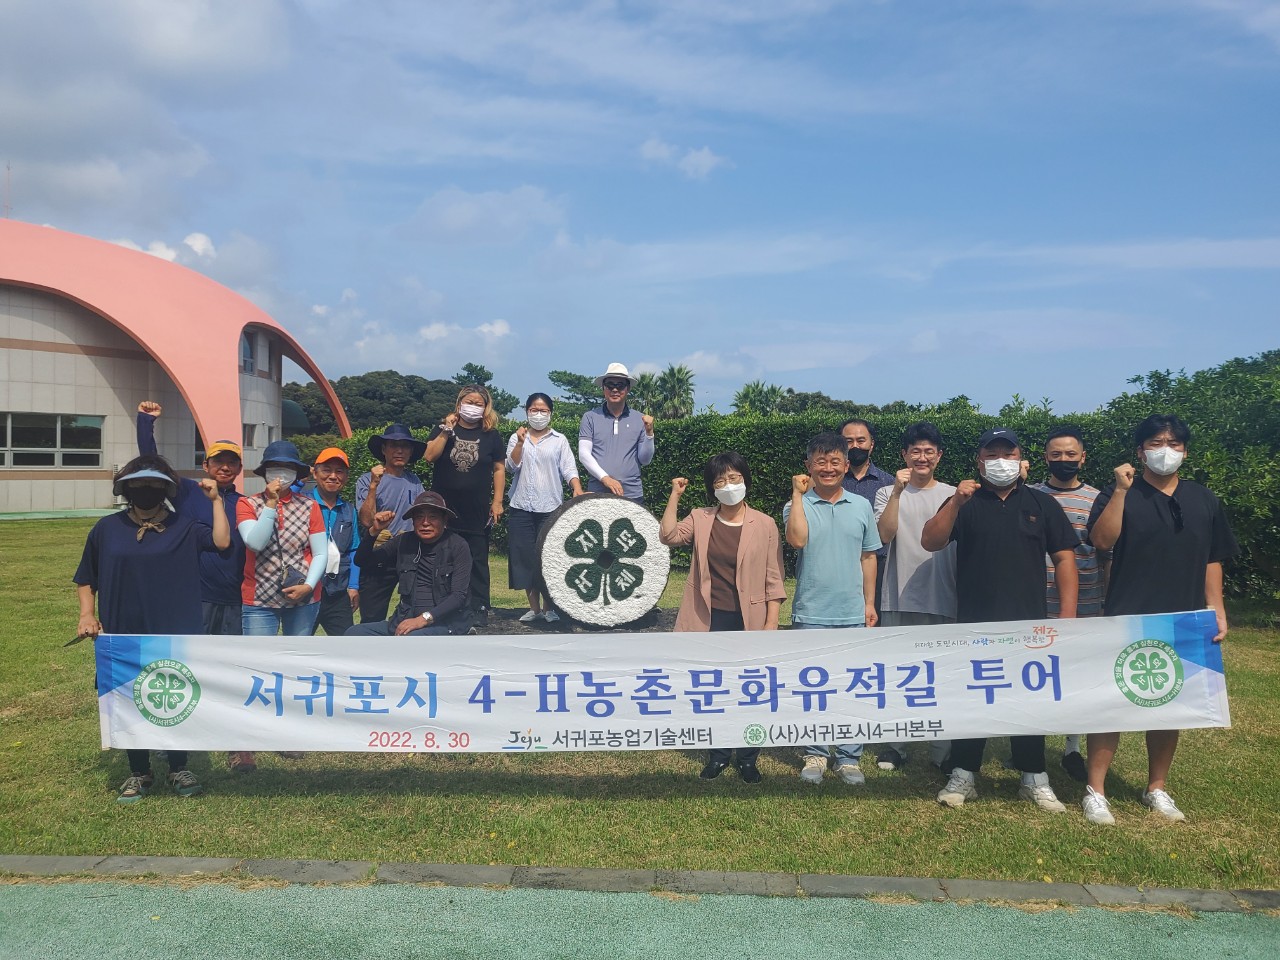 서귀포시 4-H농촌문화 유적길 탐방